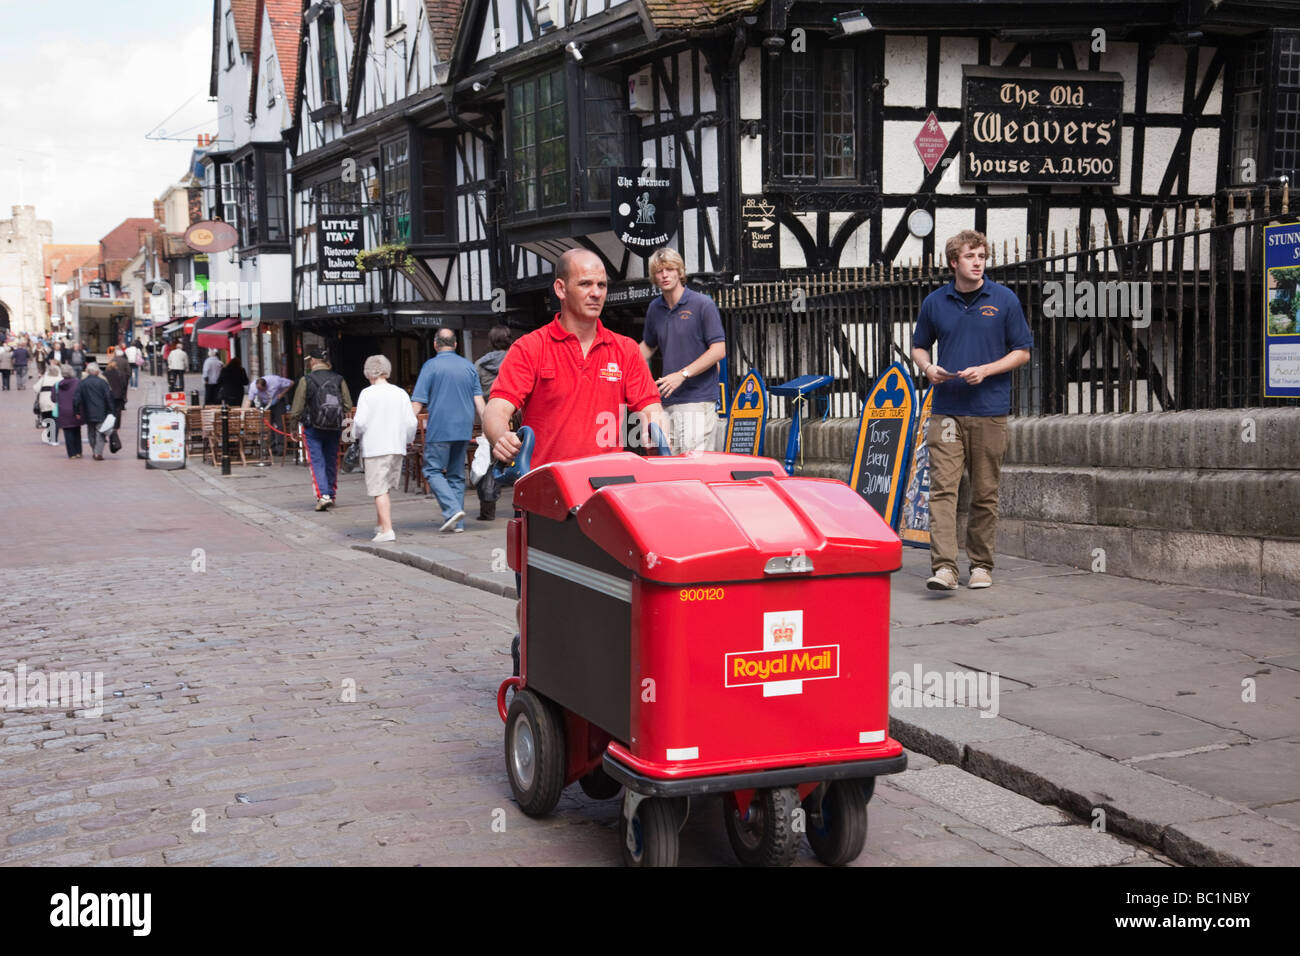 Un facteur poussant un chariot de poste Royal Mail livrer le courrier dans une rue de la ville. Canterbury Kent Angleterre Royaume-uni Grande-Bretagne Banque D'Images